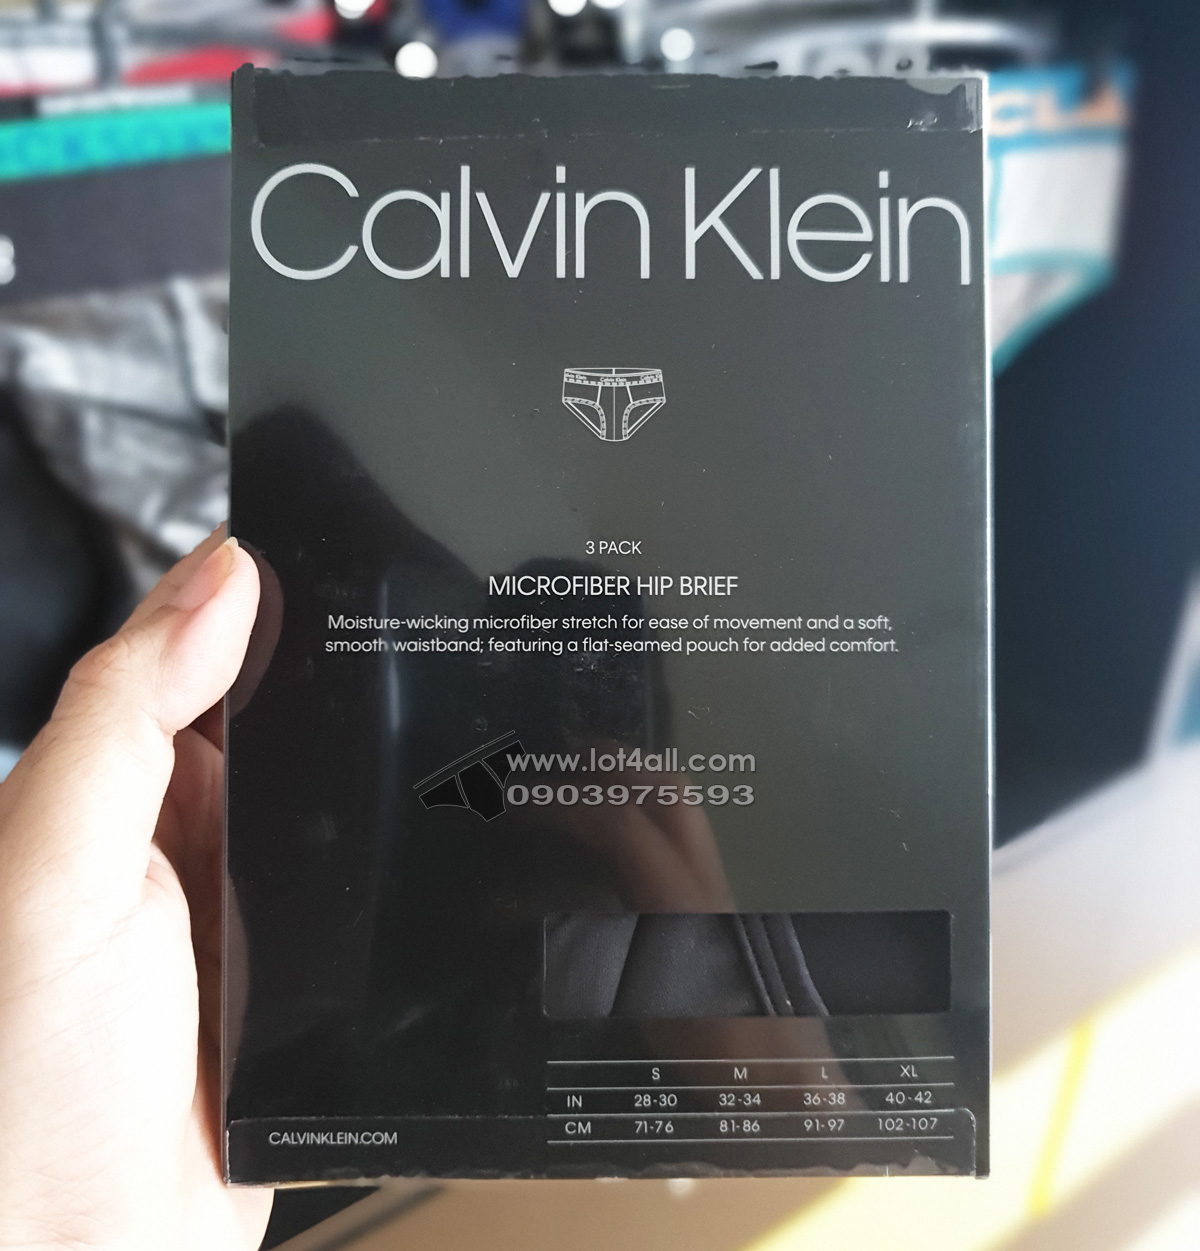 Quần lót Calvin Klein NP2162O Microfiber Hip Brief 3-pack Black